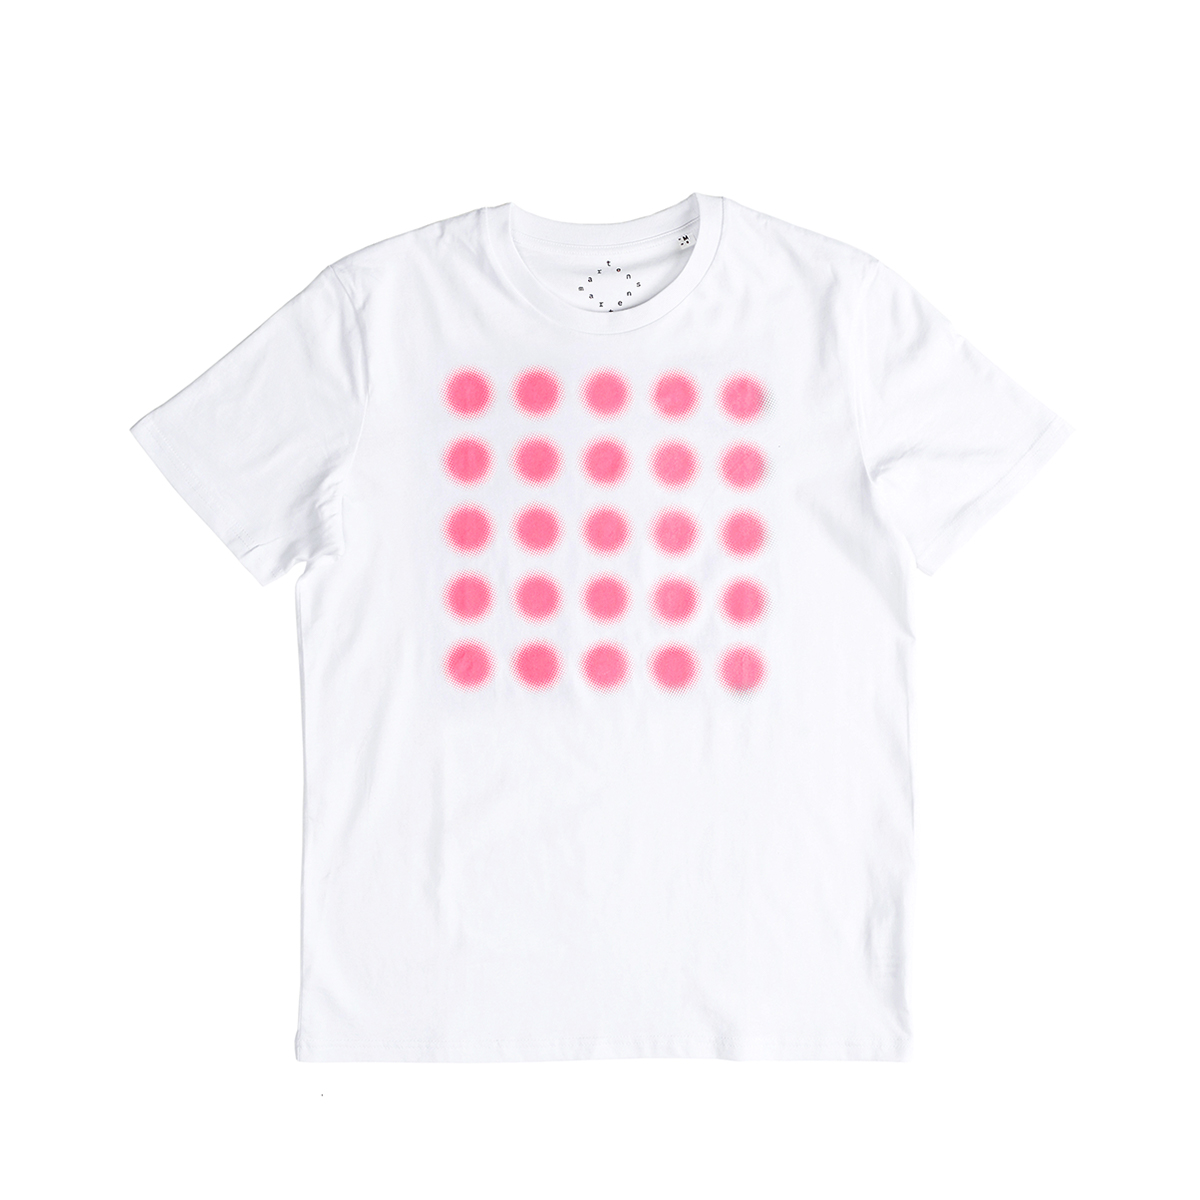 플랫폼엘 martens and martens t-shirt with printed dots (pink, L)